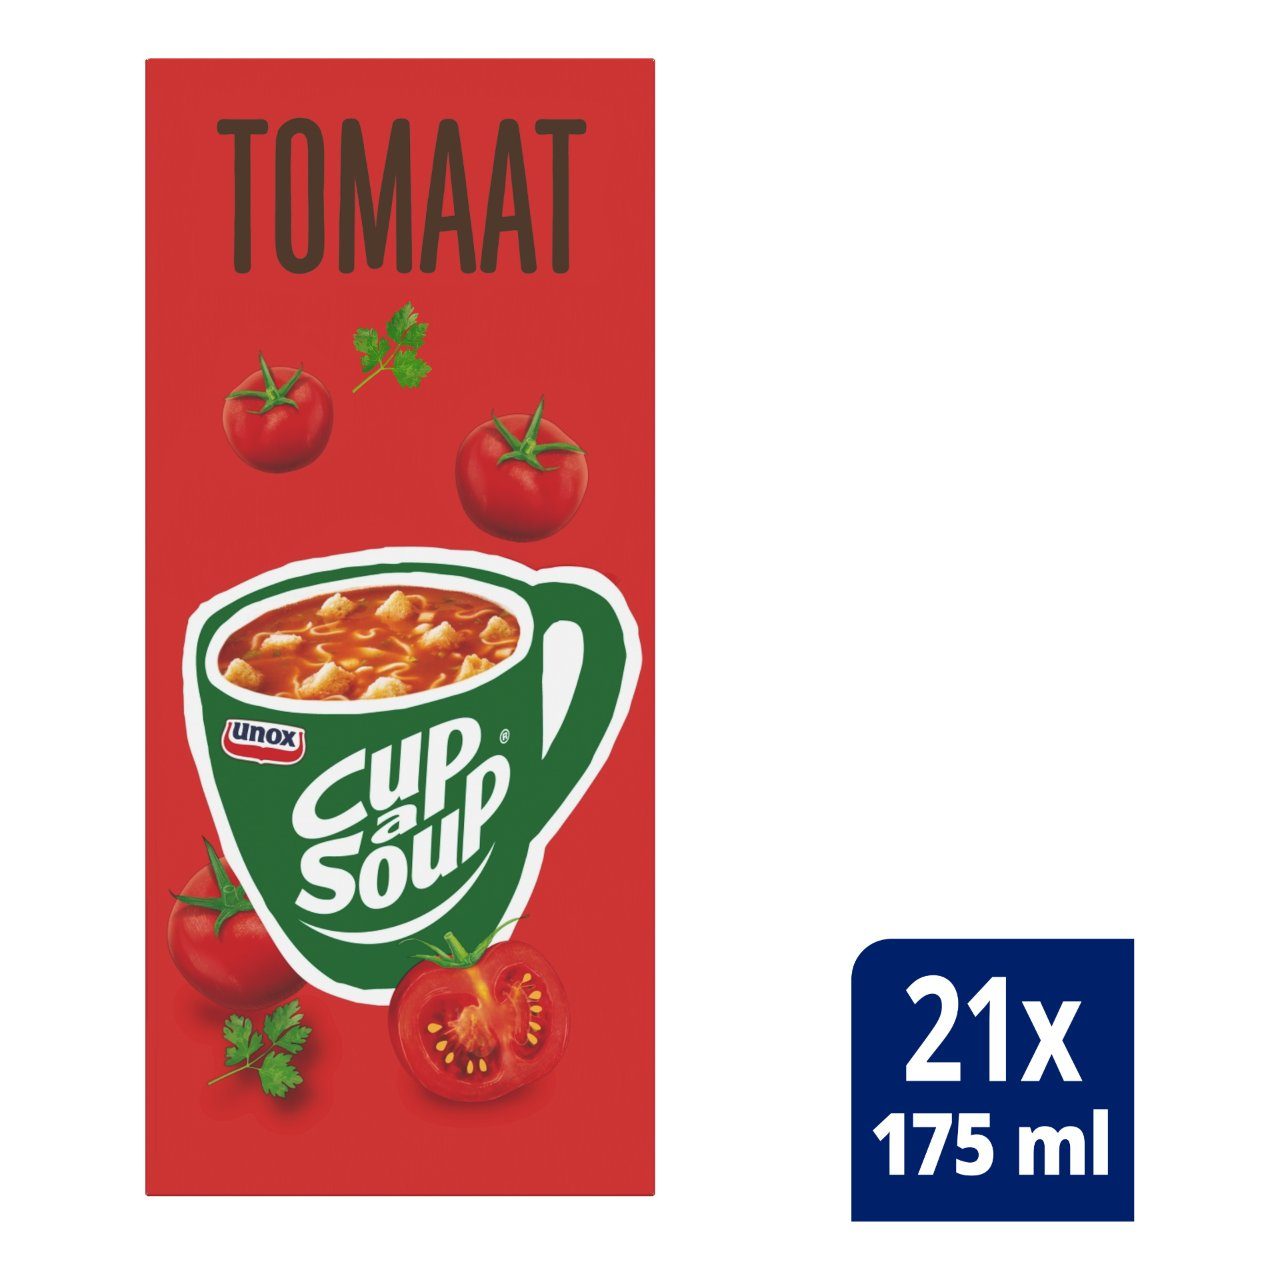 Unox Cup A Soup Tomaat 21x 175ml - van Unox - Nu voor maar €15.95 bij Workwear 2 Day